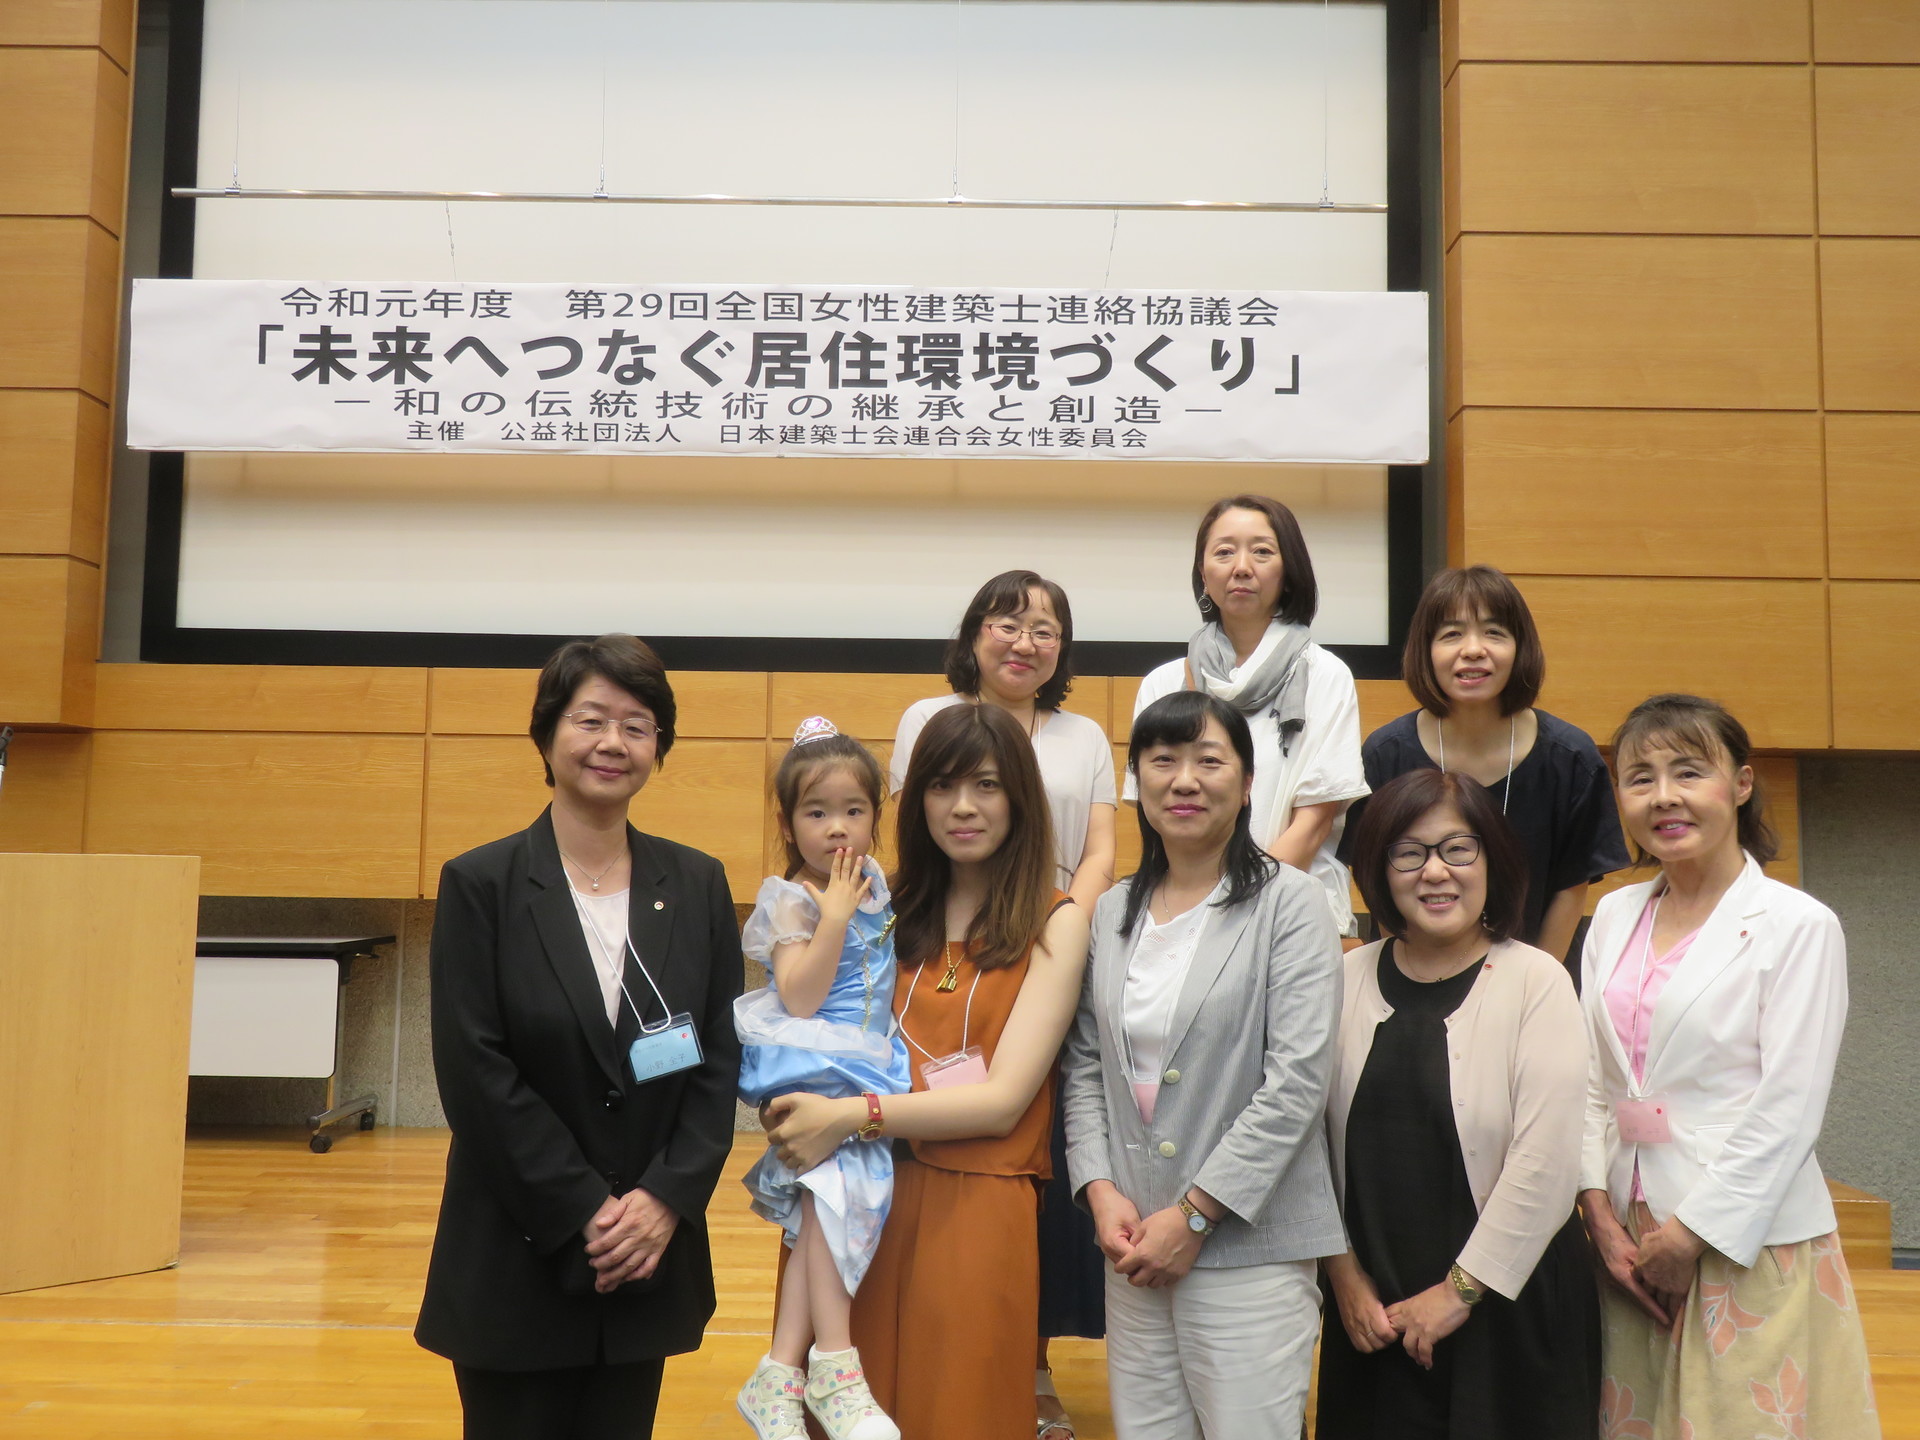 第29回全国女性建築士連絡協議会 東京 に参加して 織田喜代美 愛知建築士会女性委員会